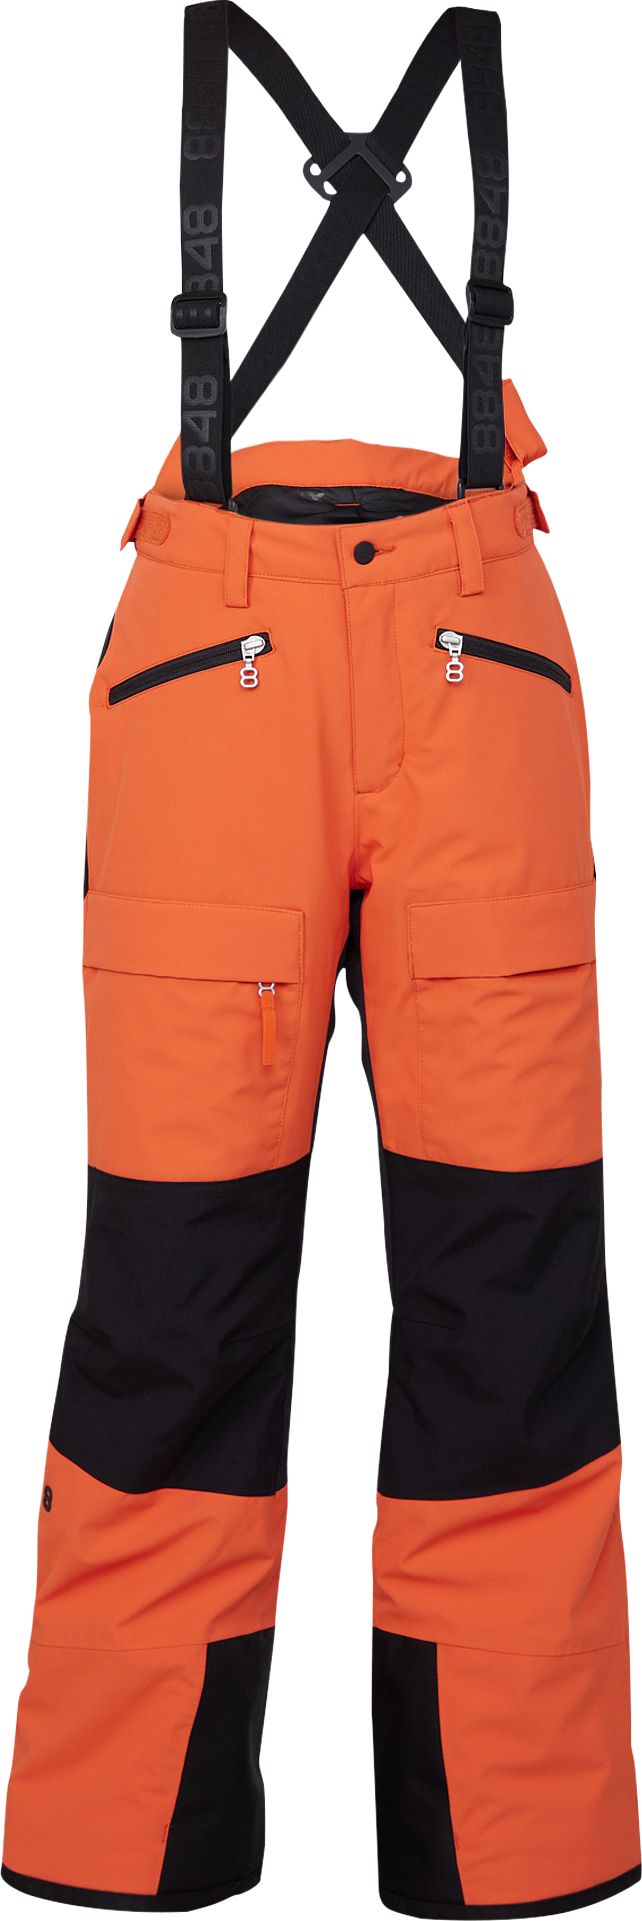 Juniors' Criss Pant Orange Rust